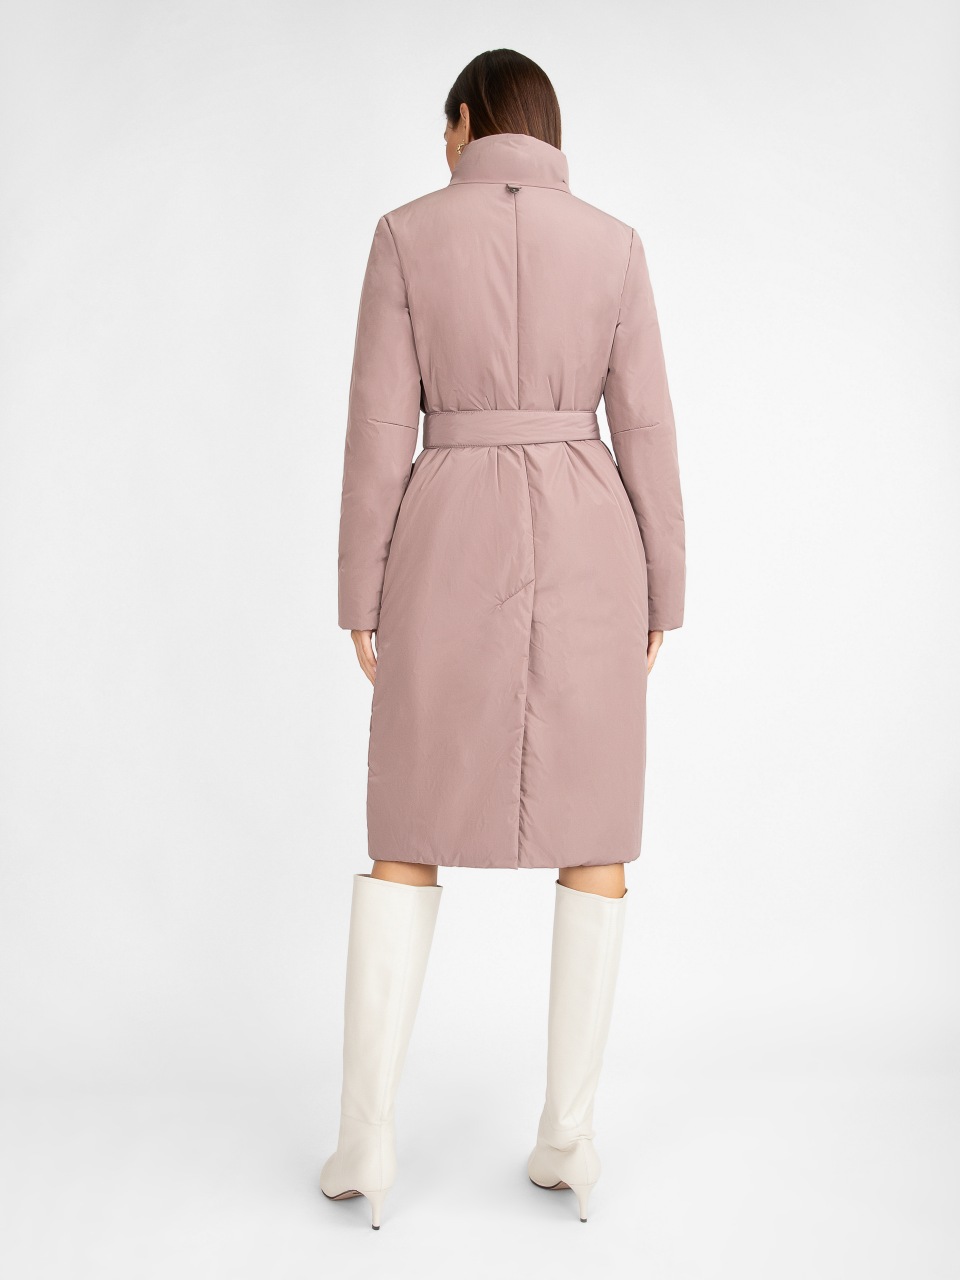 Пальто женское ElectraStyle 5У-2111-112 розовое 48 RU